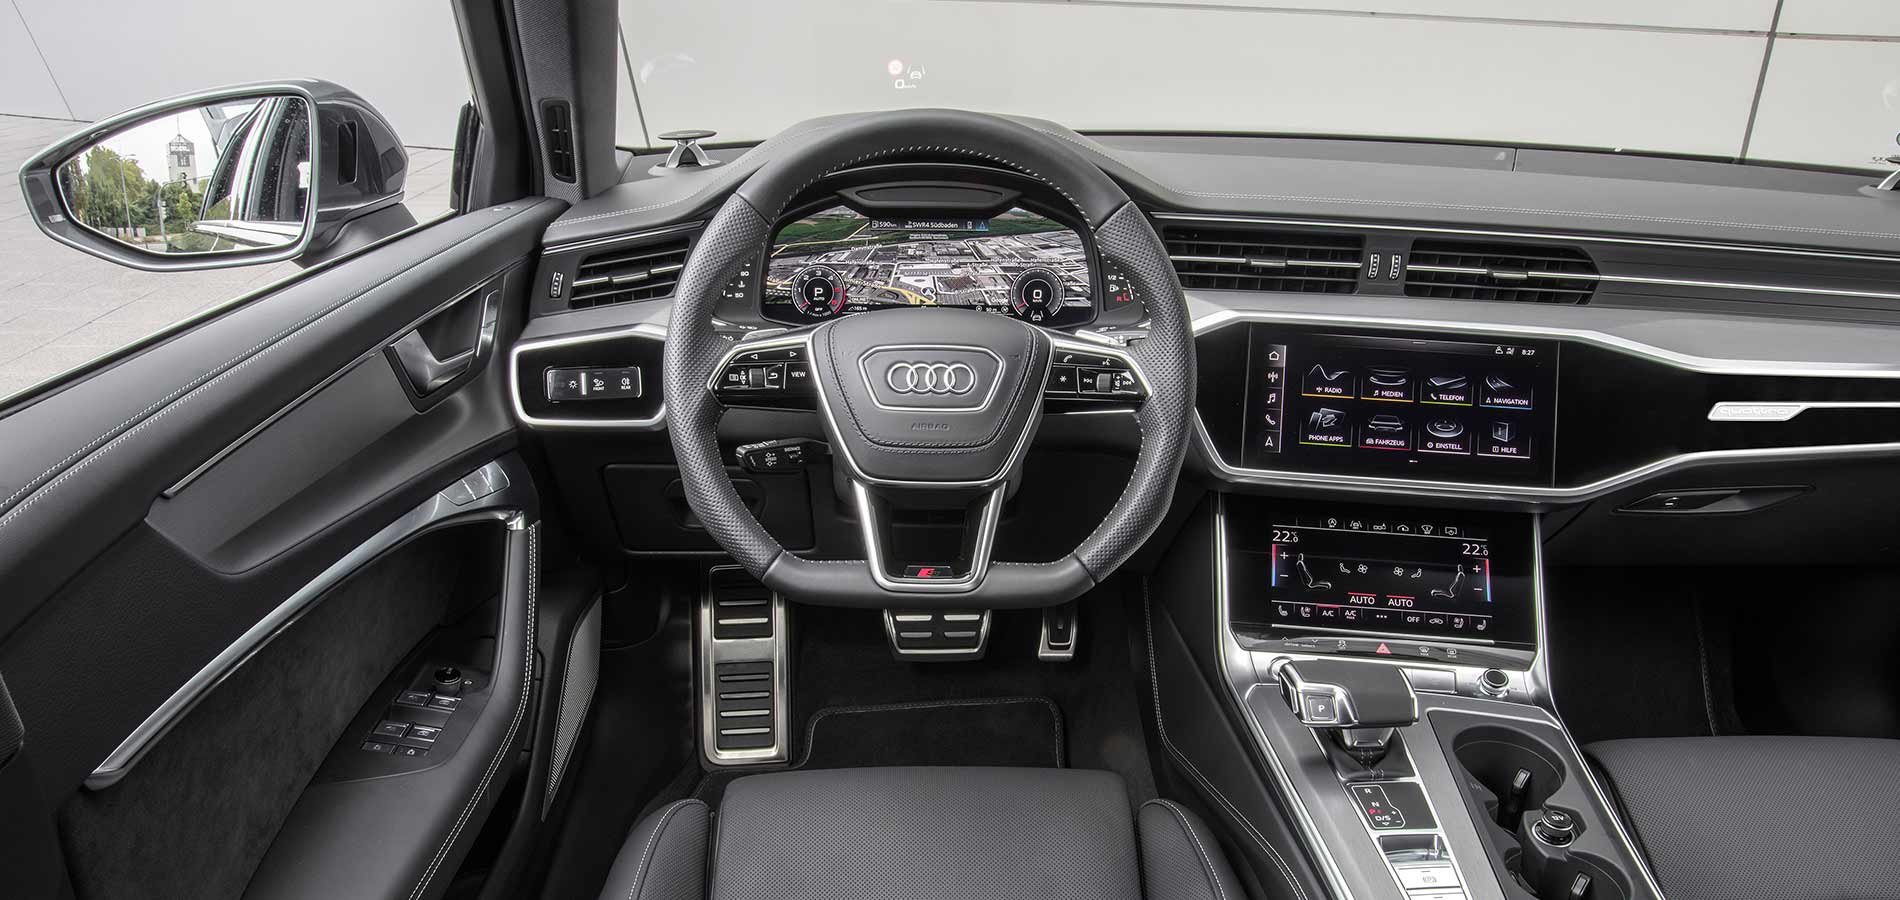 Audi A6 Cockpit